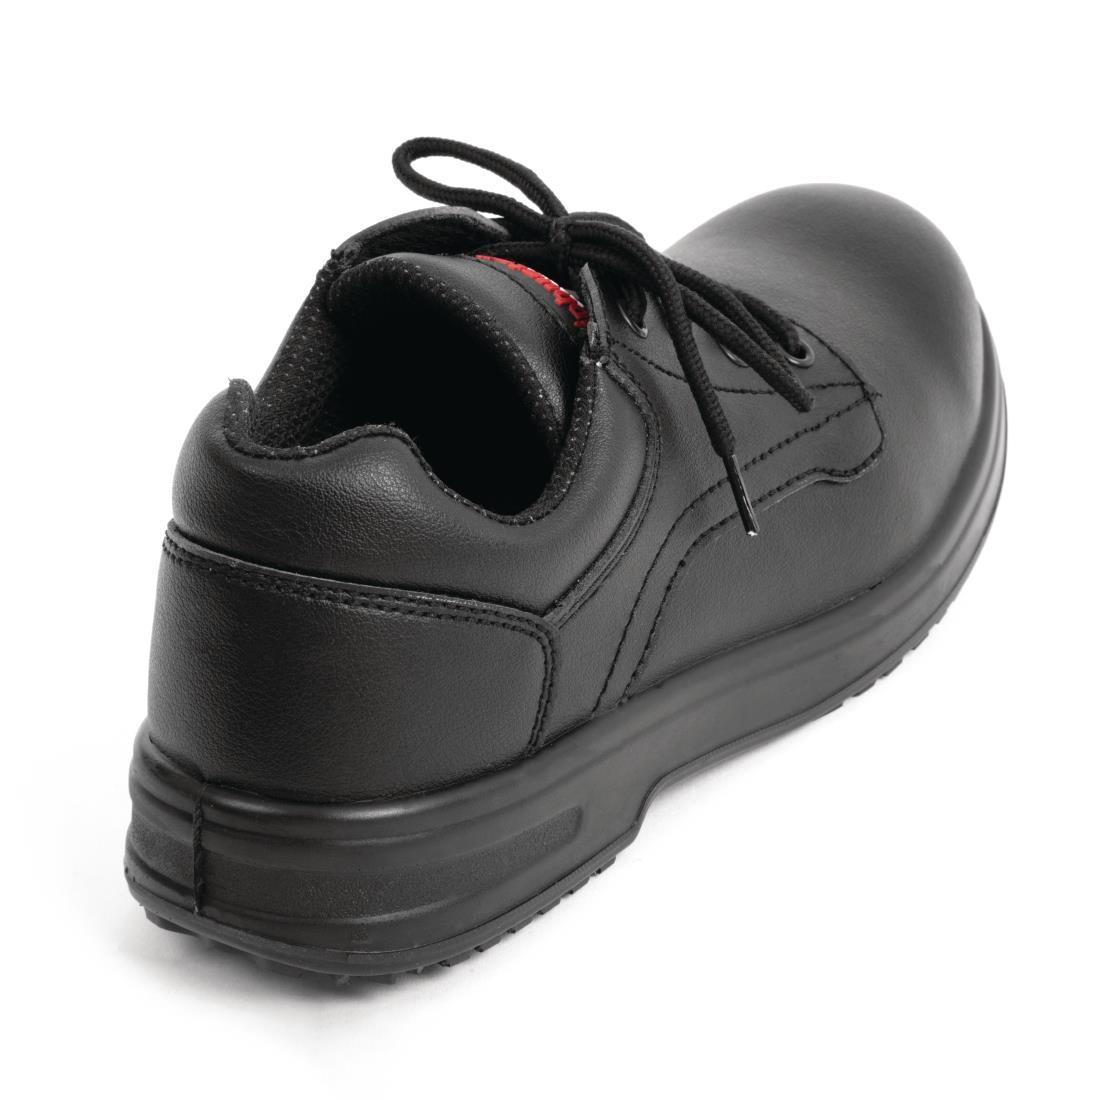 Slipbuster Basic Toe Cap Safety Shoes Black 45 - BB497-45  - 3